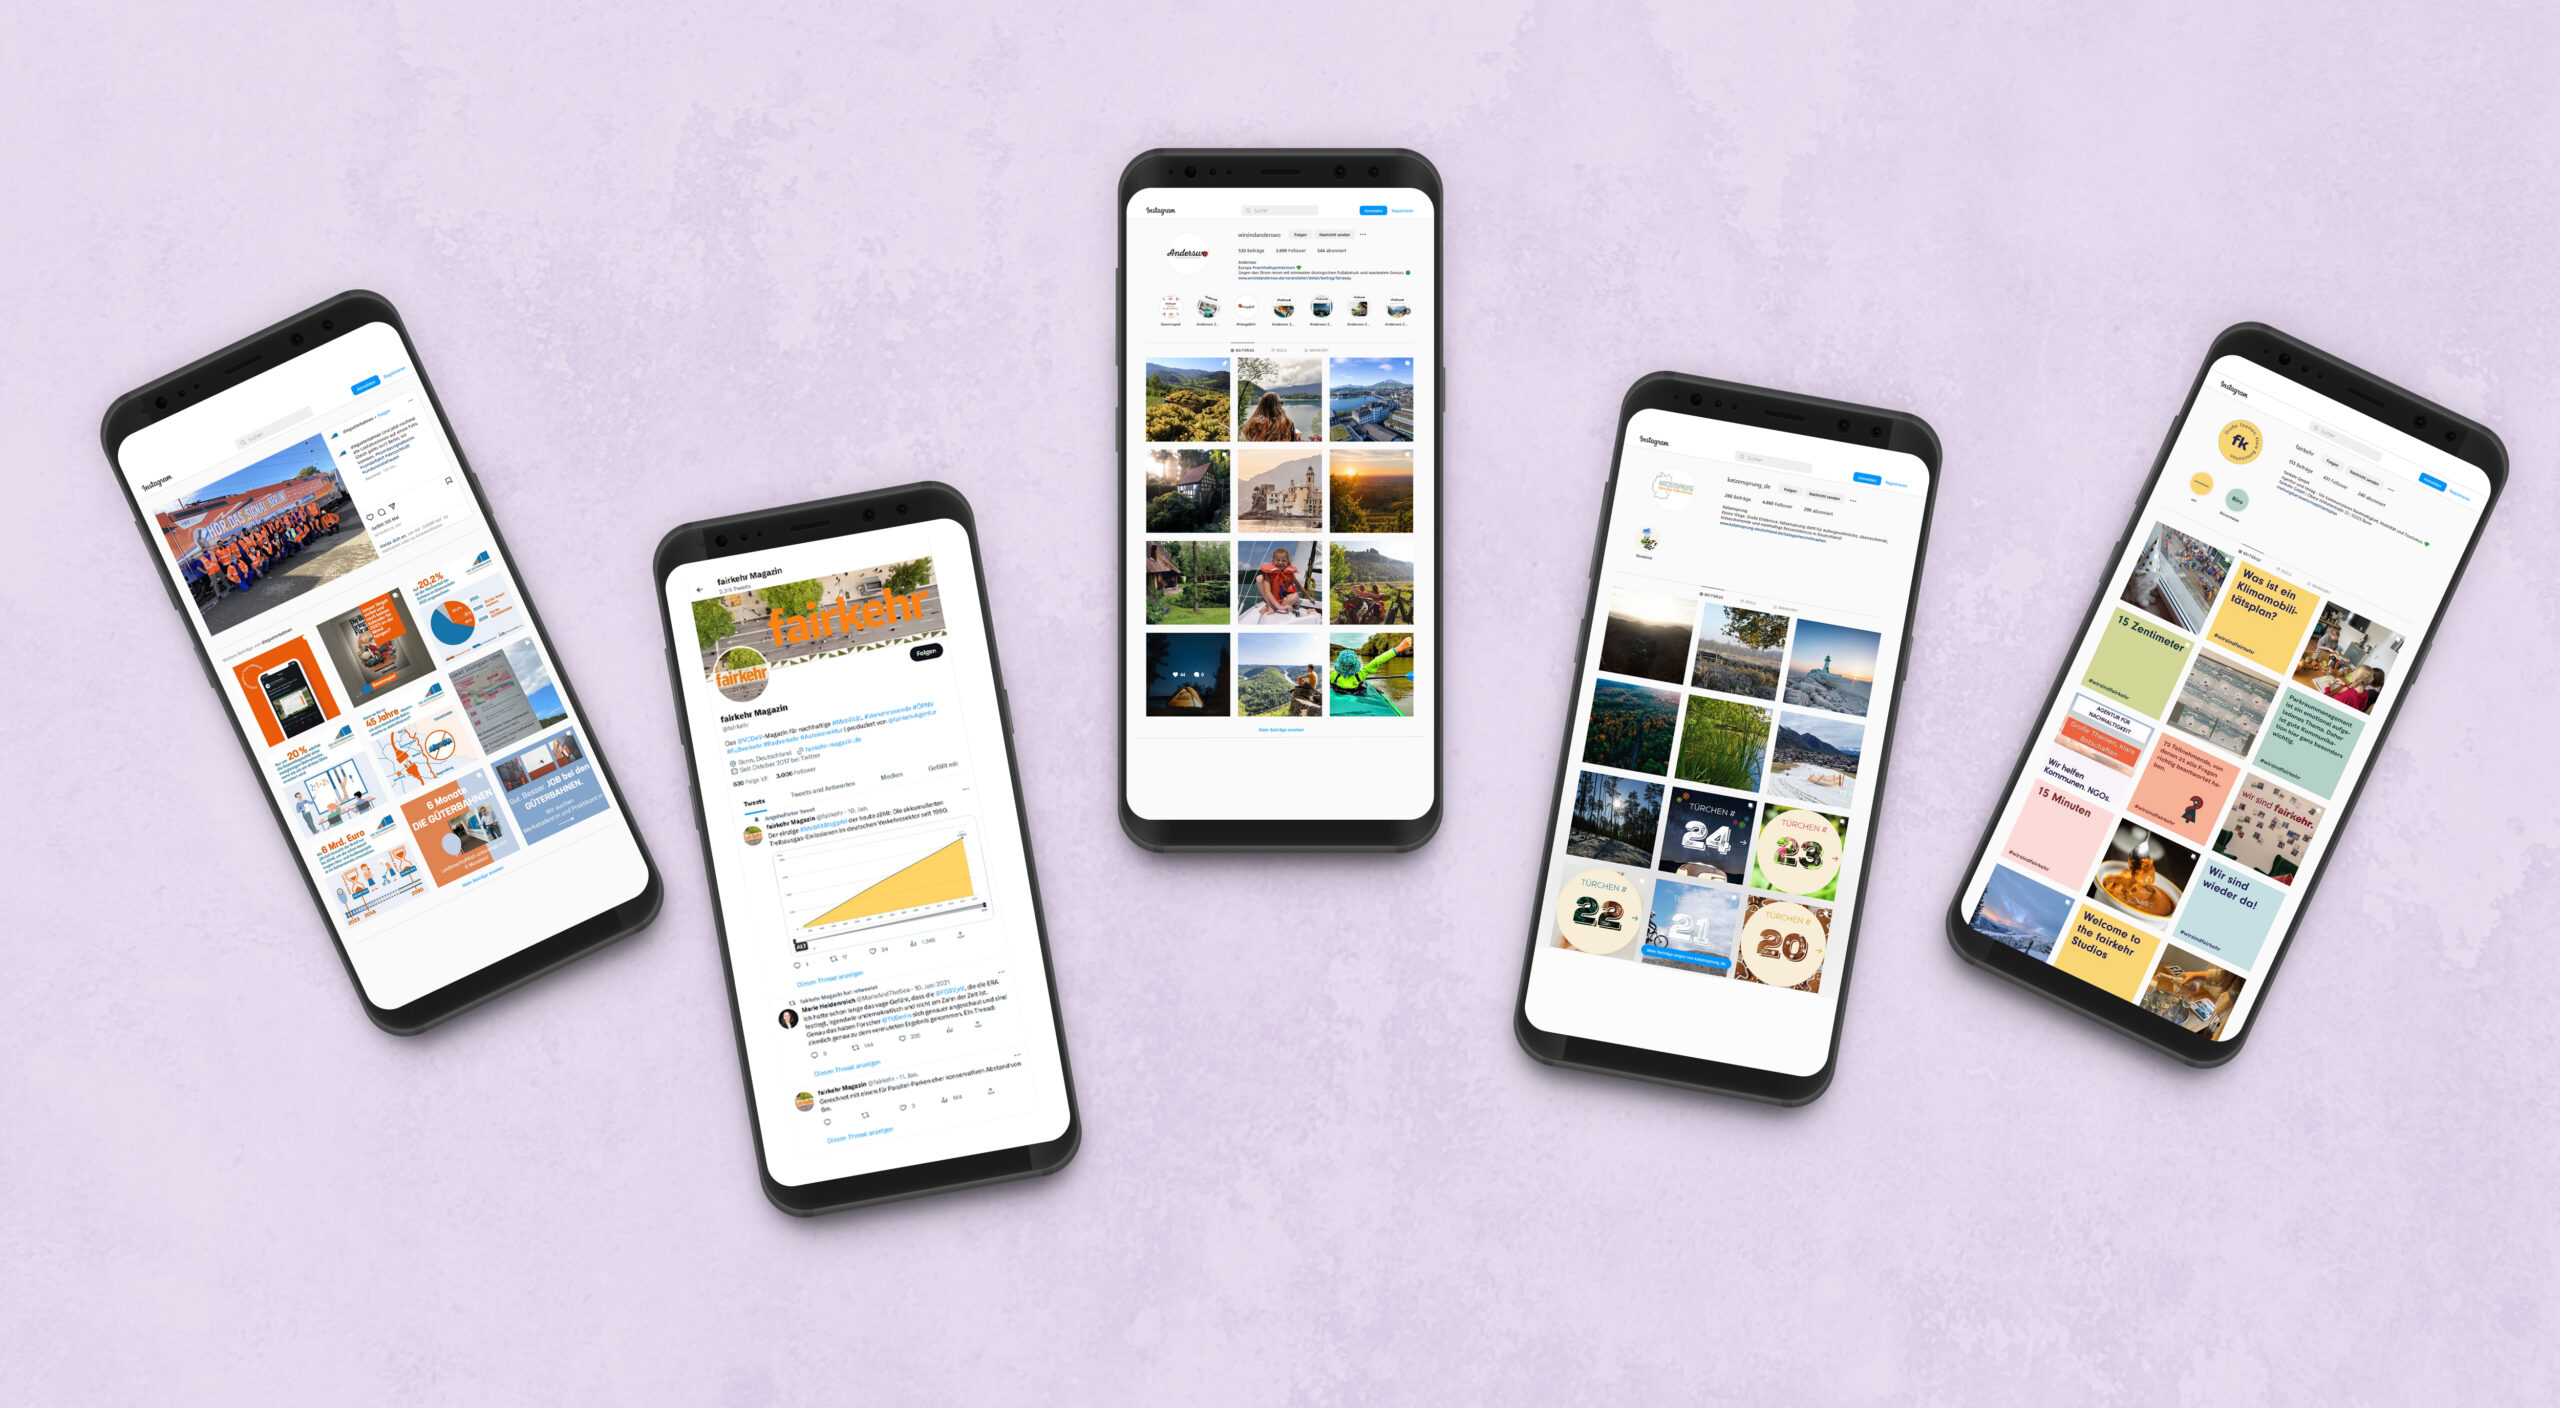 Fünf Smartphones auf lila Hintergrund, die verschiedene Social-Media-Kanäle zeigen